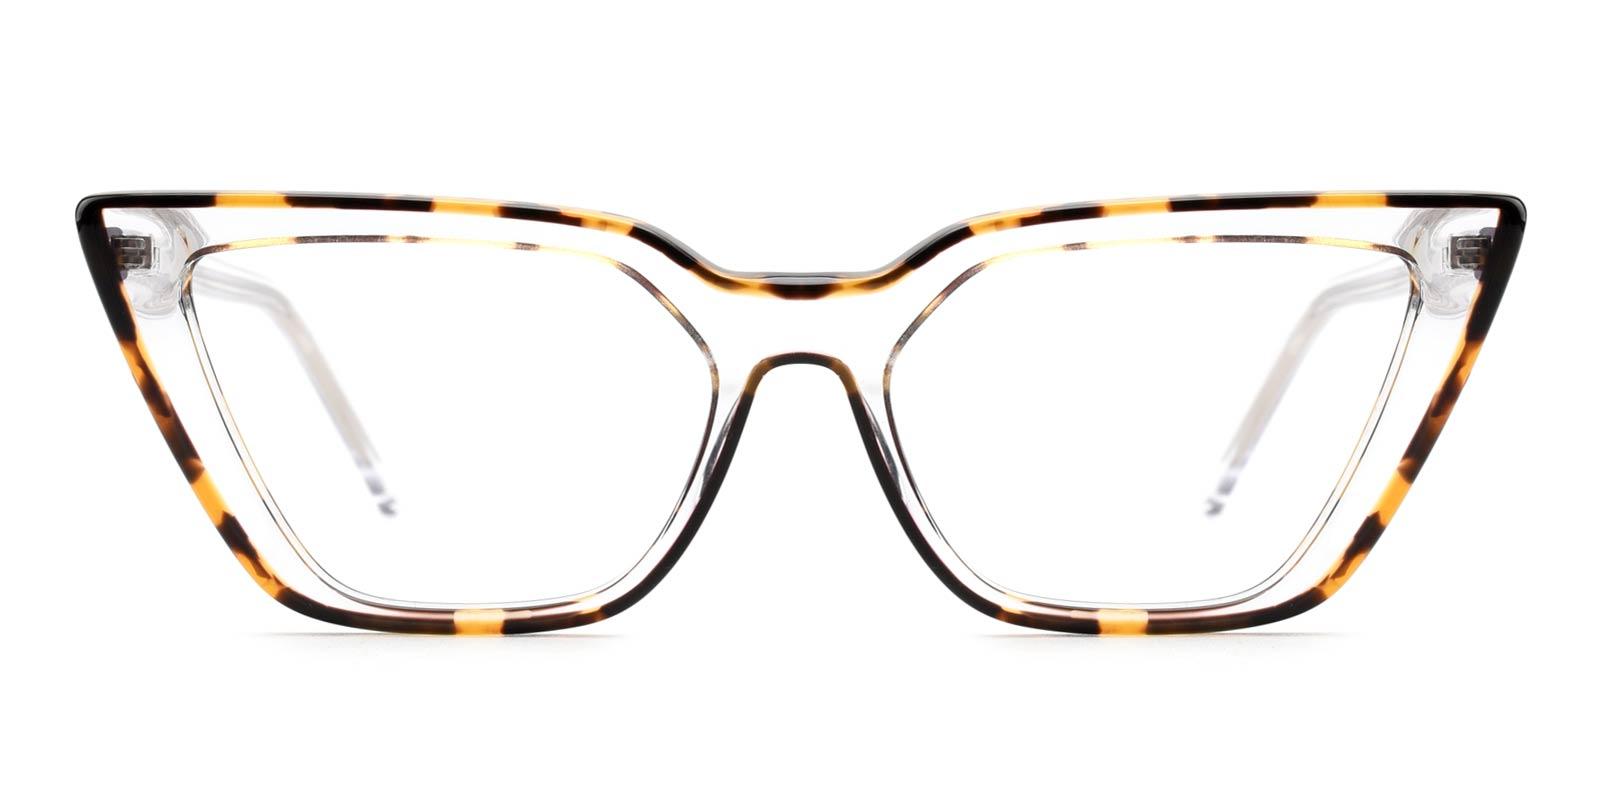 Lois-Tortoise-Cat-TR-Eyeglasses-detail